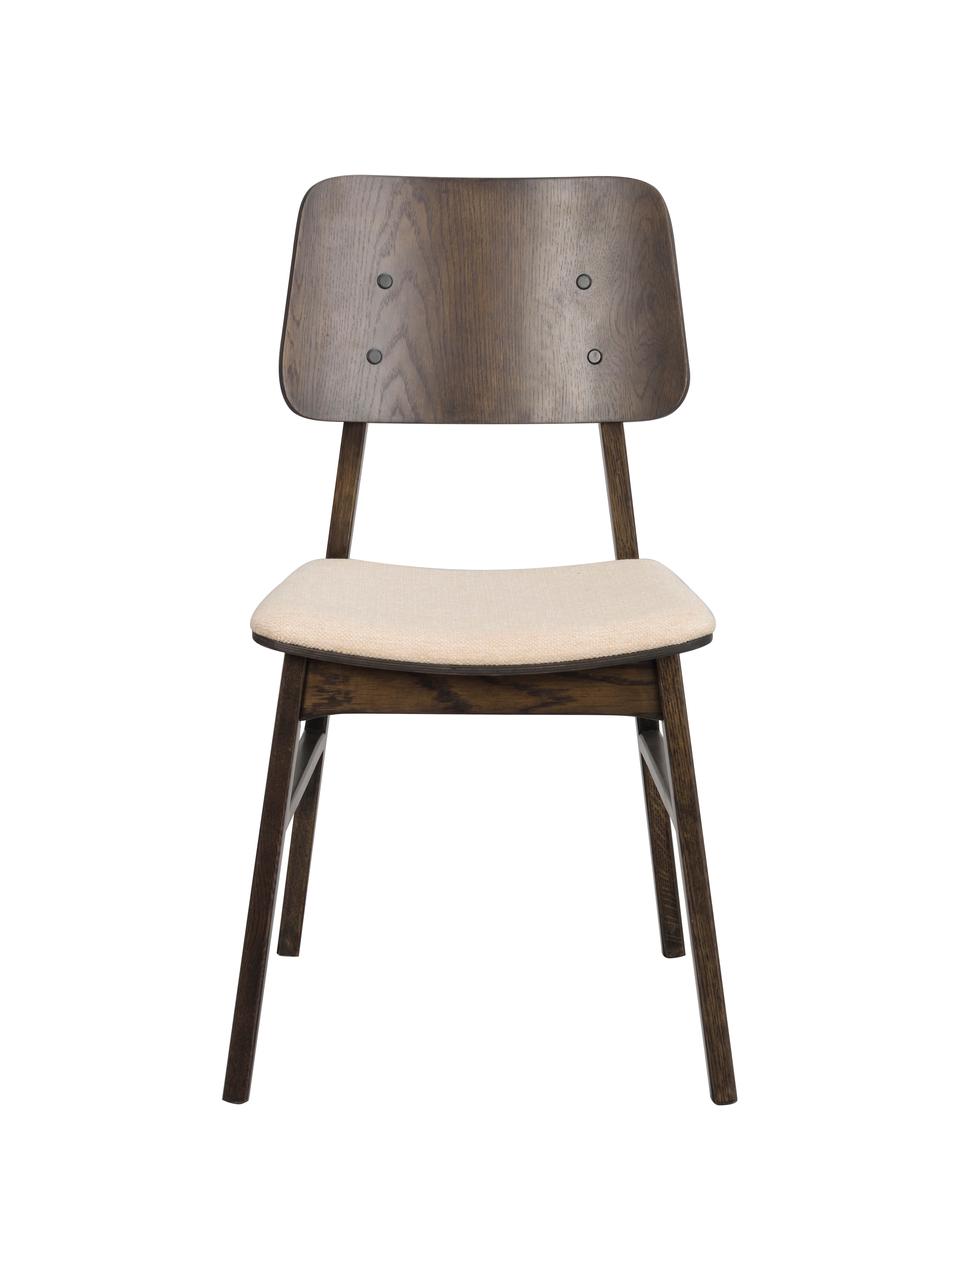 Houten stoelen Nagano met gestoffeerde zitting, 2 stuks, Bekleding: 100 % polypropyleen, Eikenhout, bruin gelakt, geweven stof beige, B 50 x D 51 cm